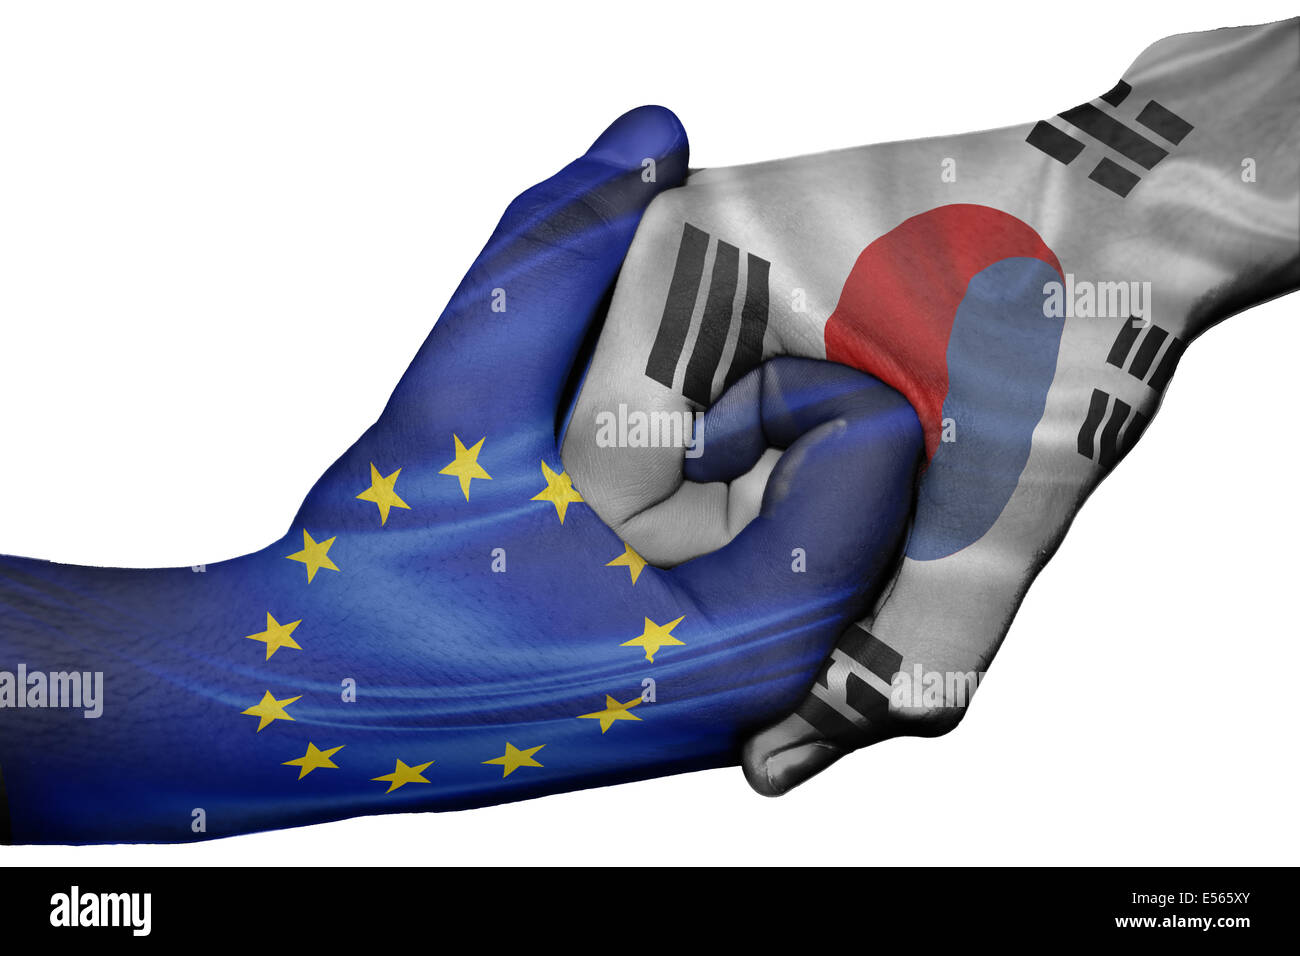 Diplomatischen Handshake zwischen den Ländern: Flaggen der Europäischen Union und Südkorea überdruckte die beiden Hände Stockfoto